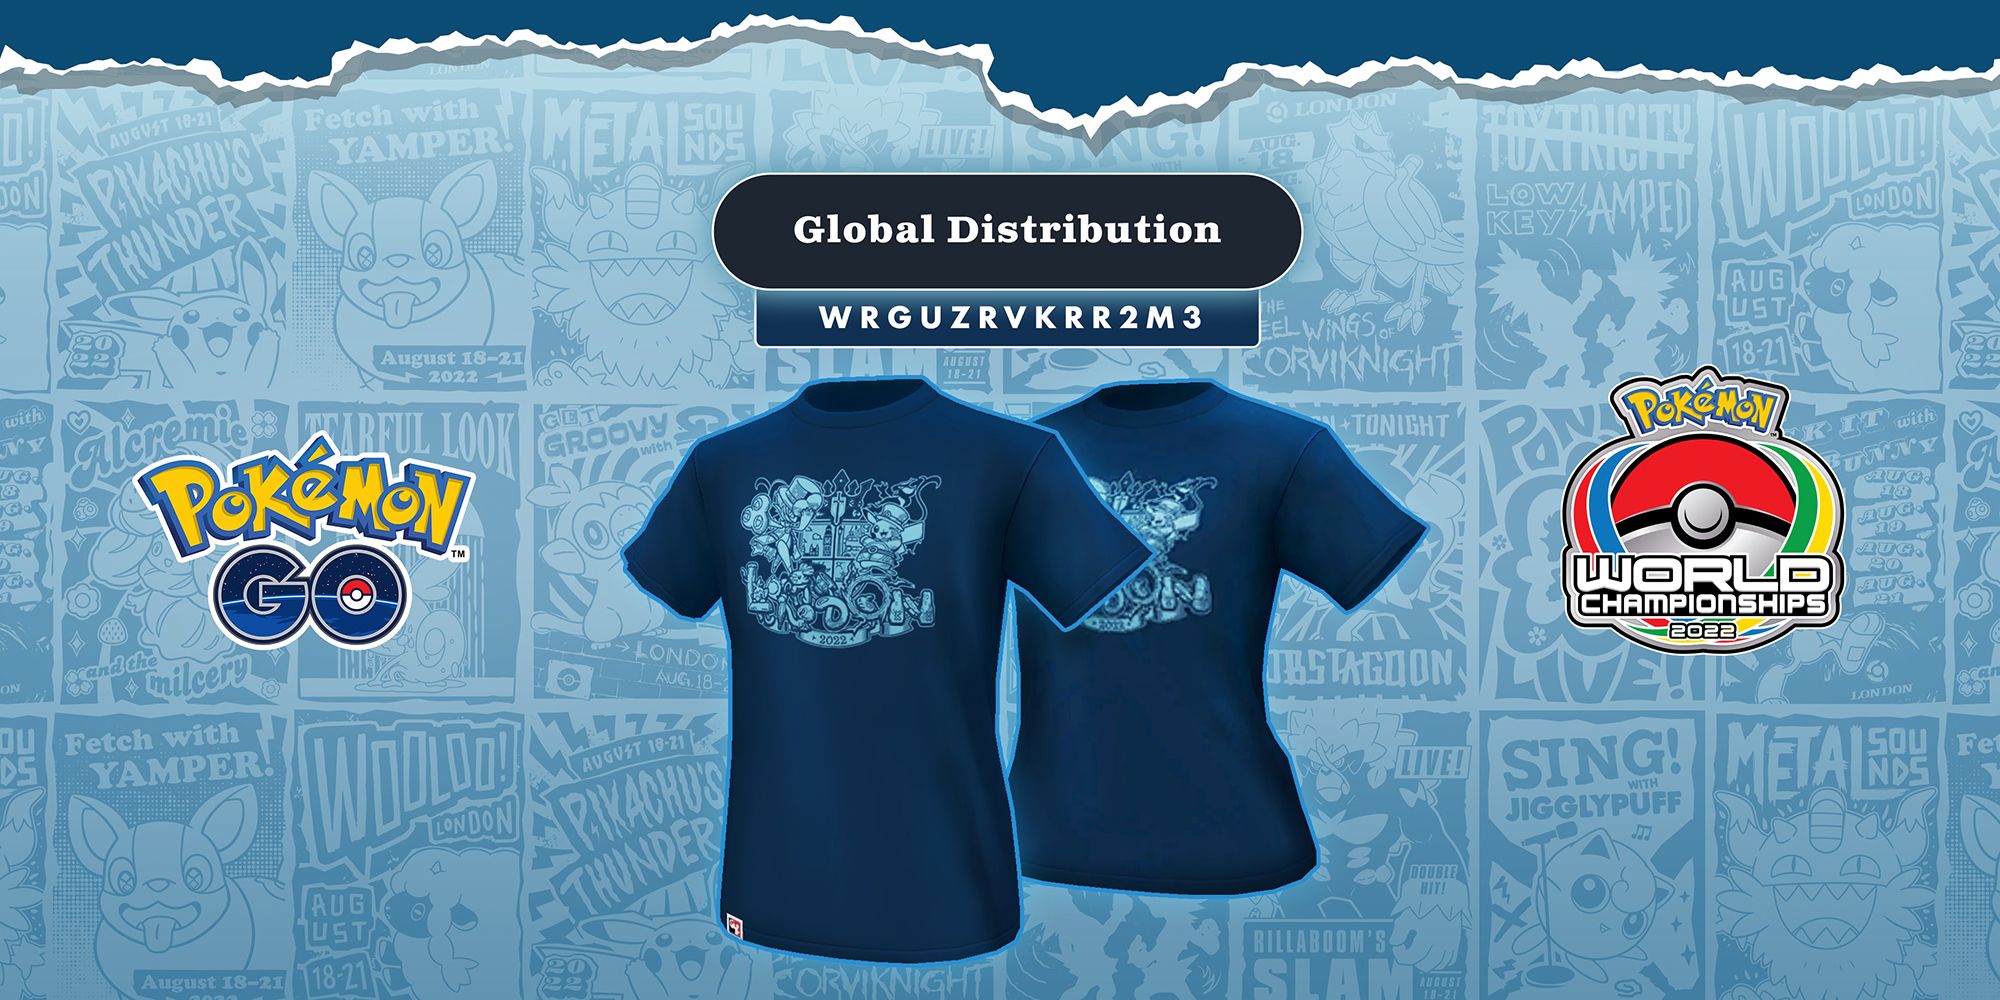 Camiseta Avatar do Campeonato Pokémon Worlds 2022 que você podia reivindicar anteriormente no Pokémon GO